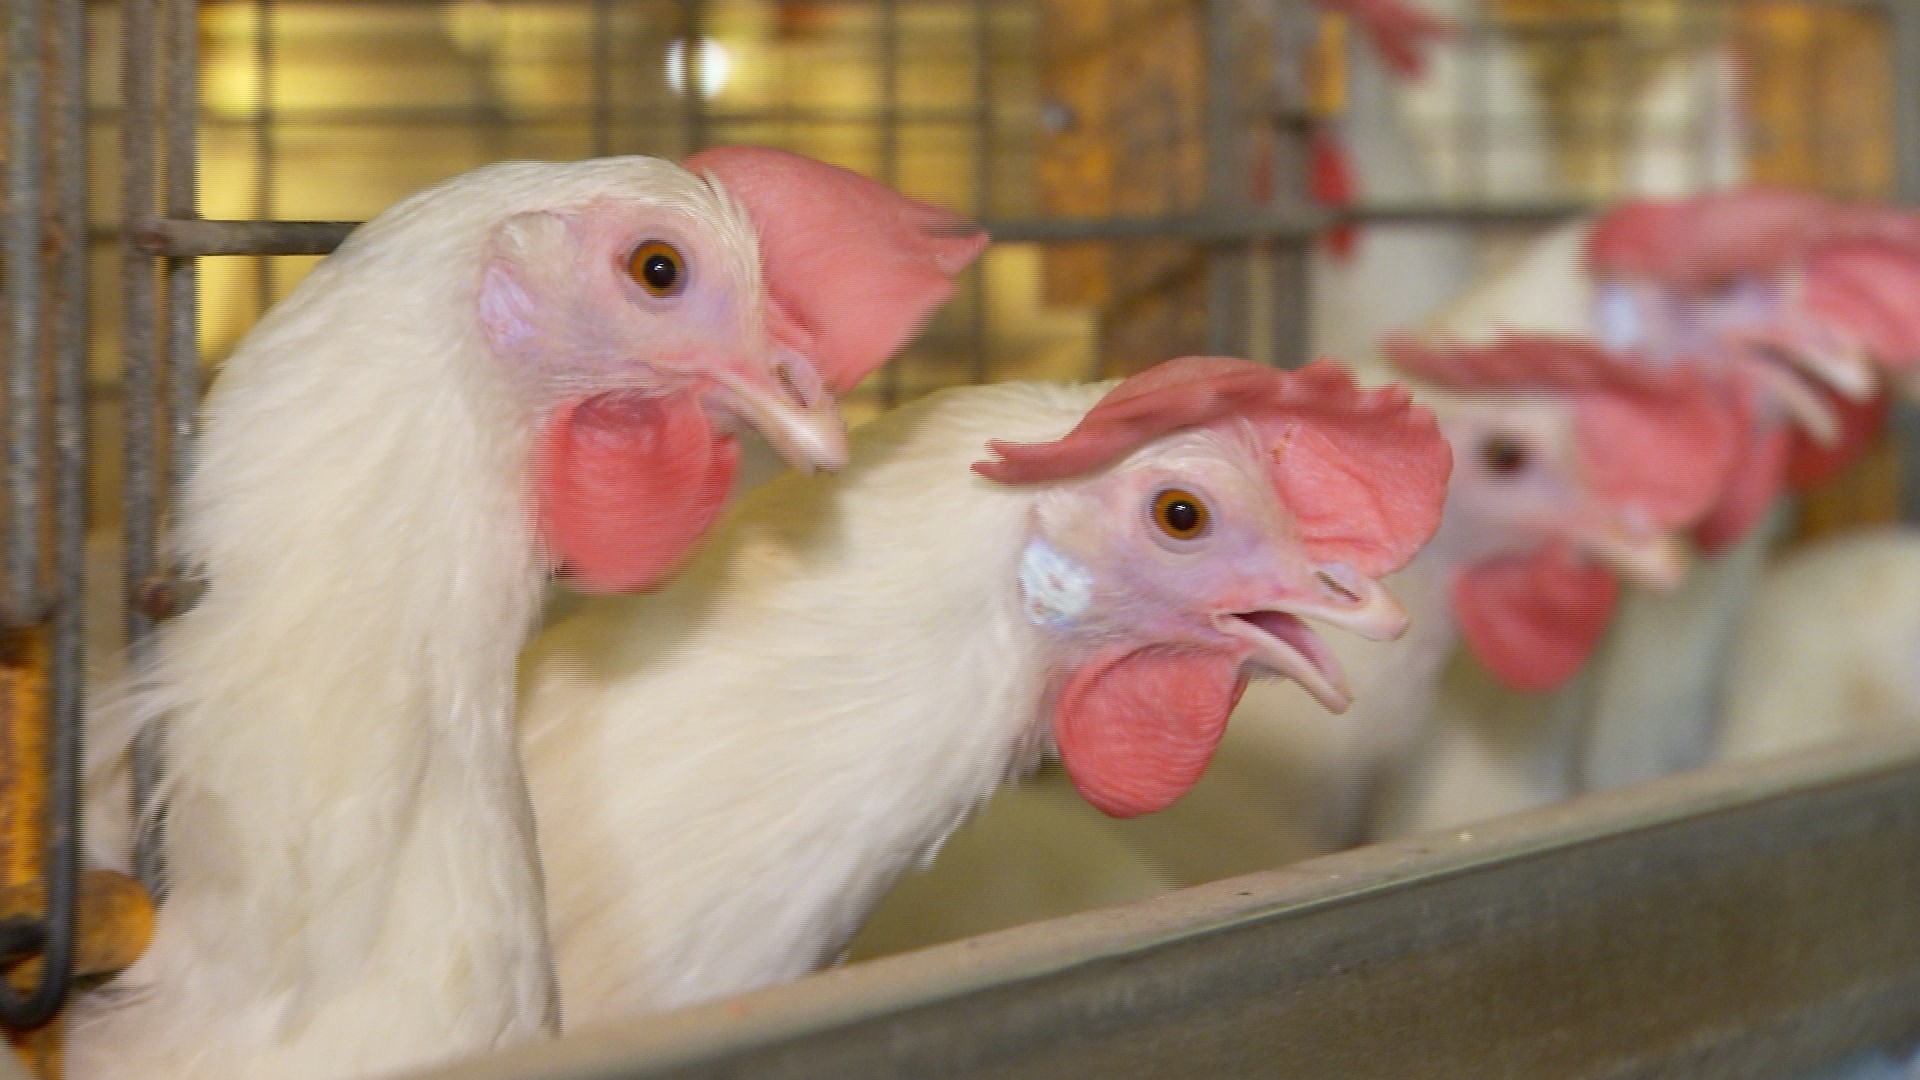 Ministério da Agricultura suspende feiras com aglomeração de aves para evitar gripe aviária